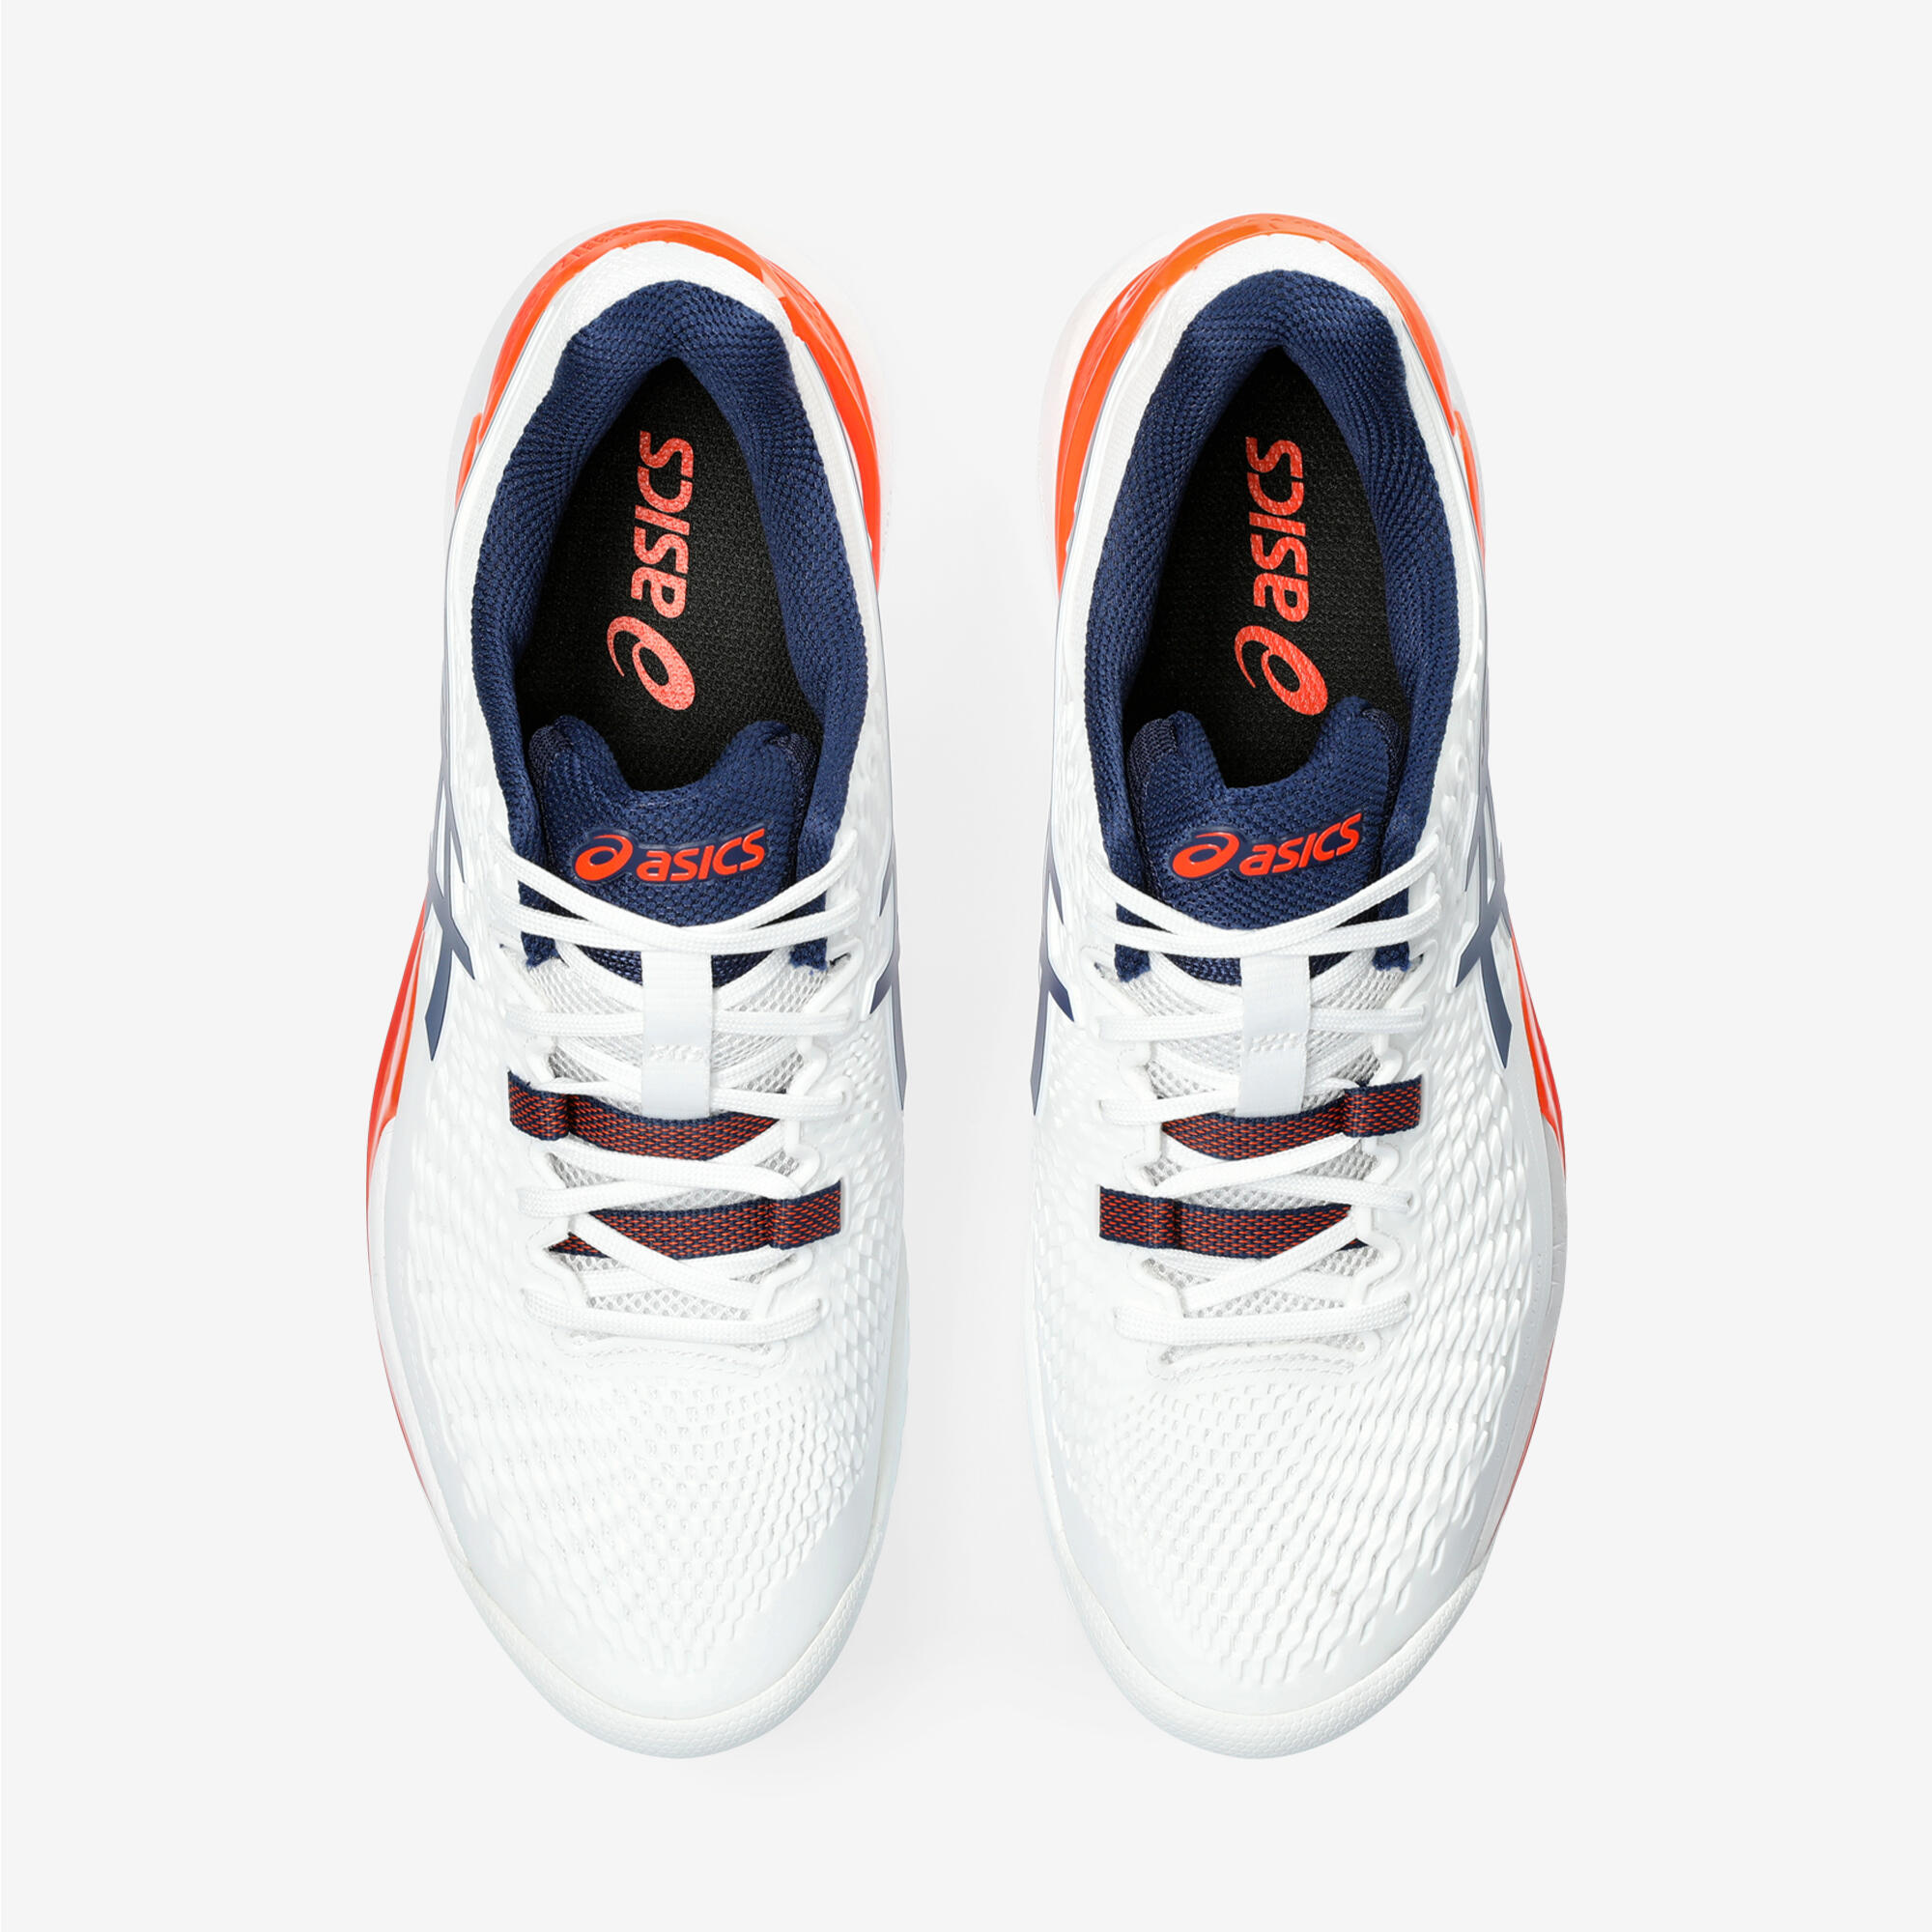 Men's Multicourt Tennis Shoes Gel Resolution 9 - White/Orange 7/7